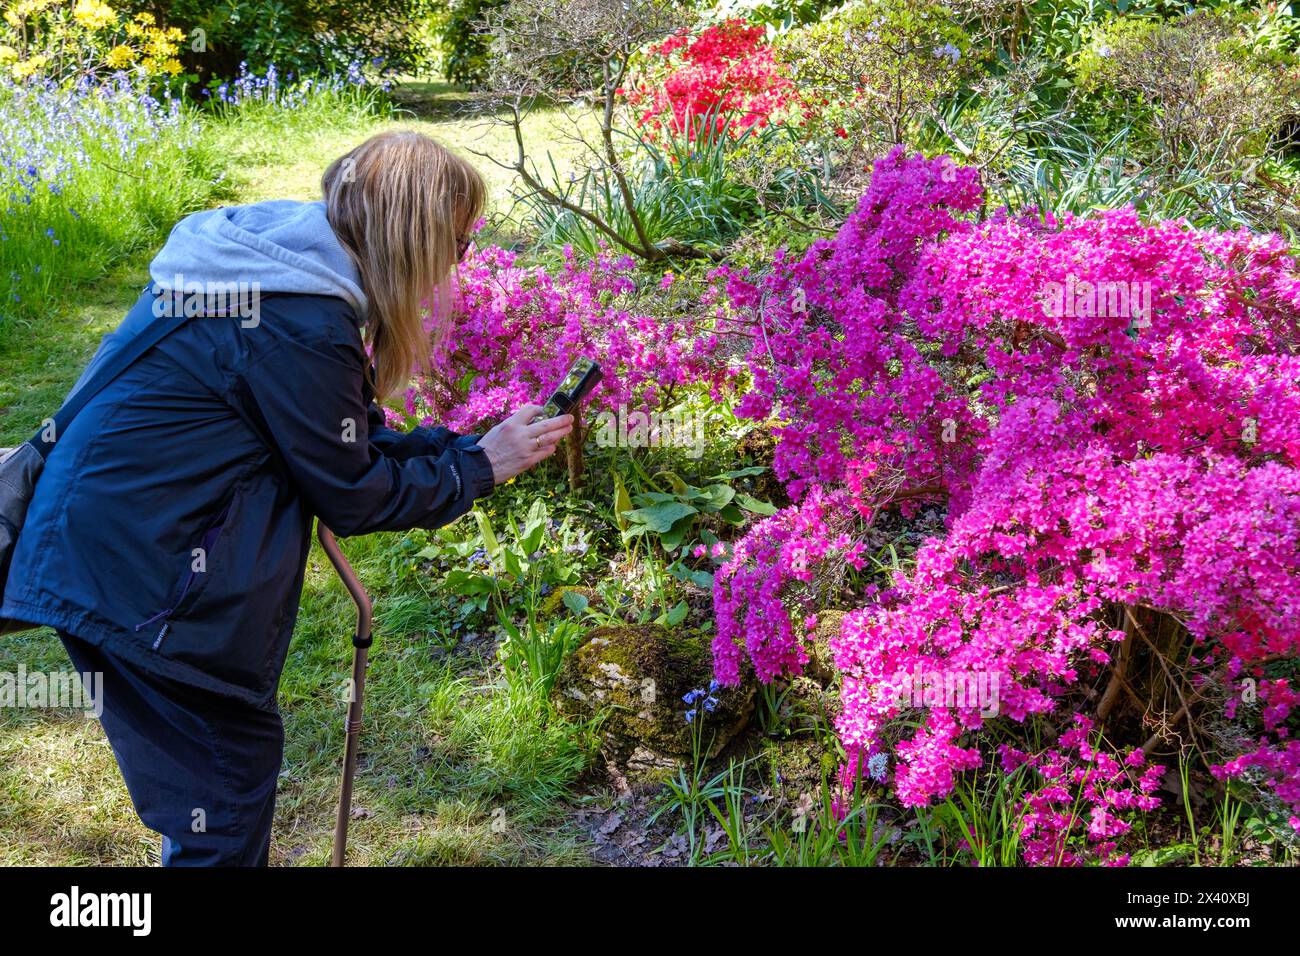 Femme photographiant et identifiant des plantes et des fleurs, sur son téléphone portable, Royaume-Uni Banque D'Images